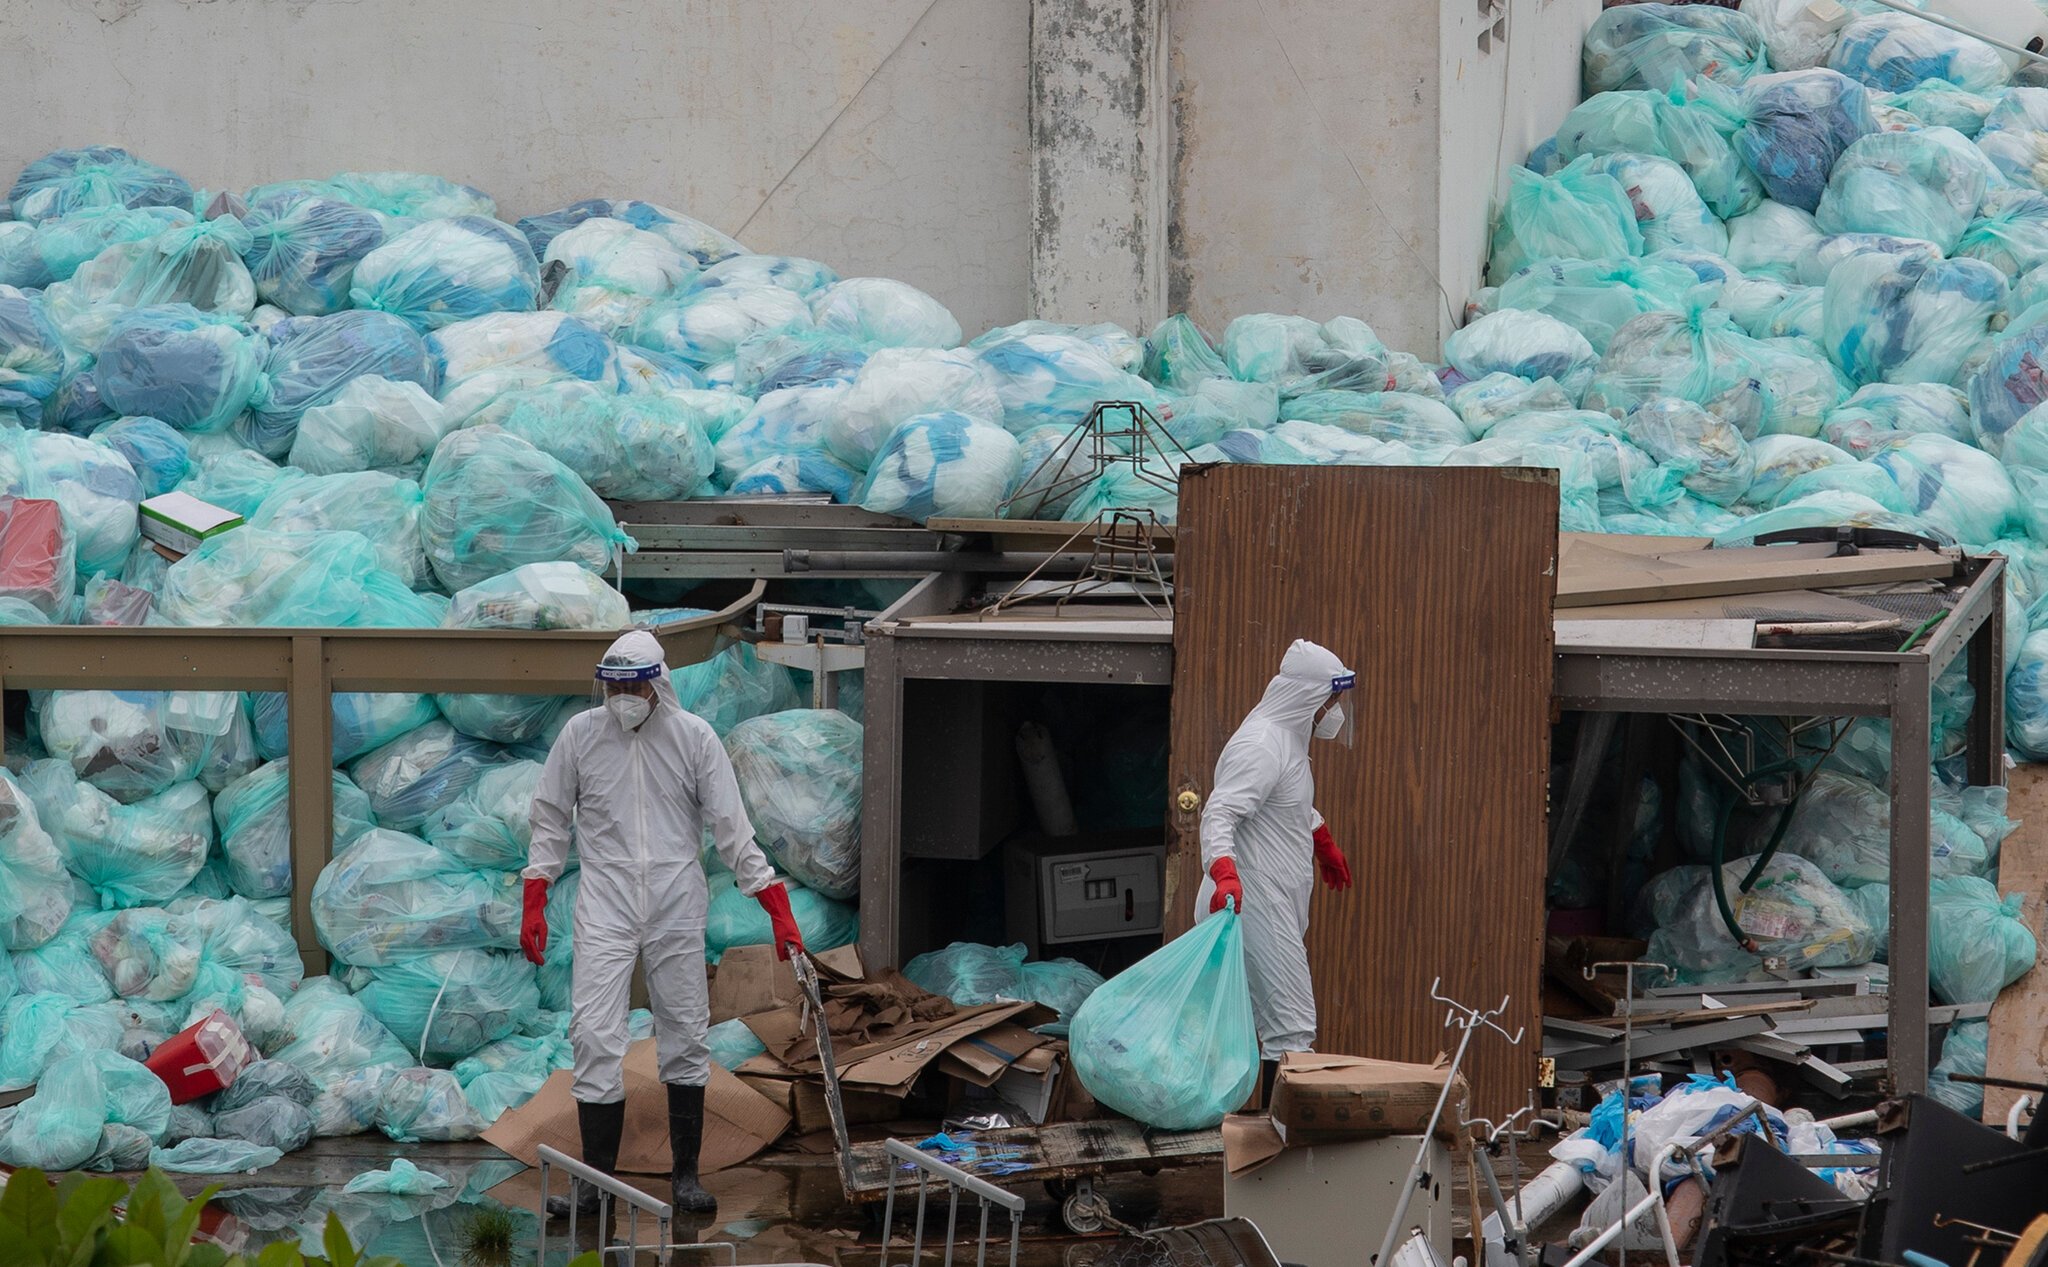  OMS: Pandemia de coronavirus a creat un “munte” de deşeuri medicale